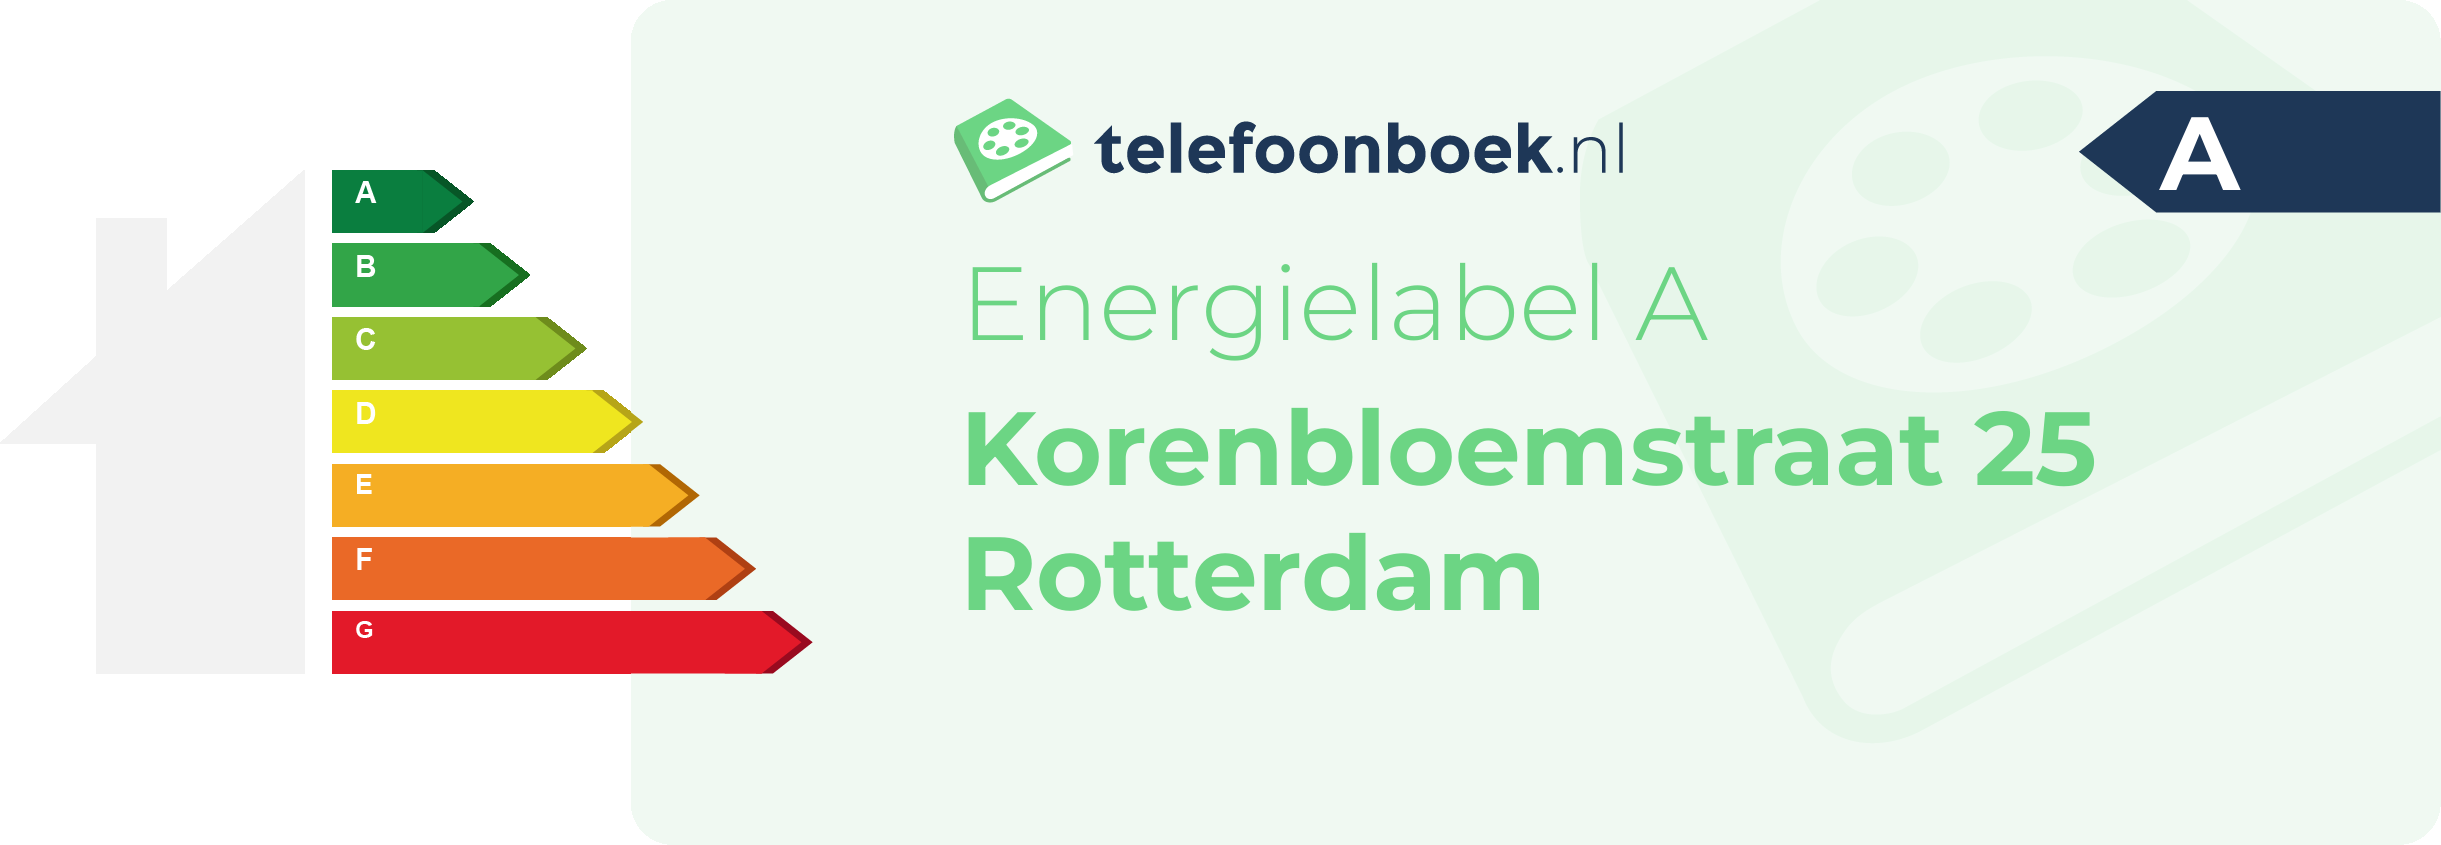 Energielabel Korenbloemstraat 25 Rotterdam